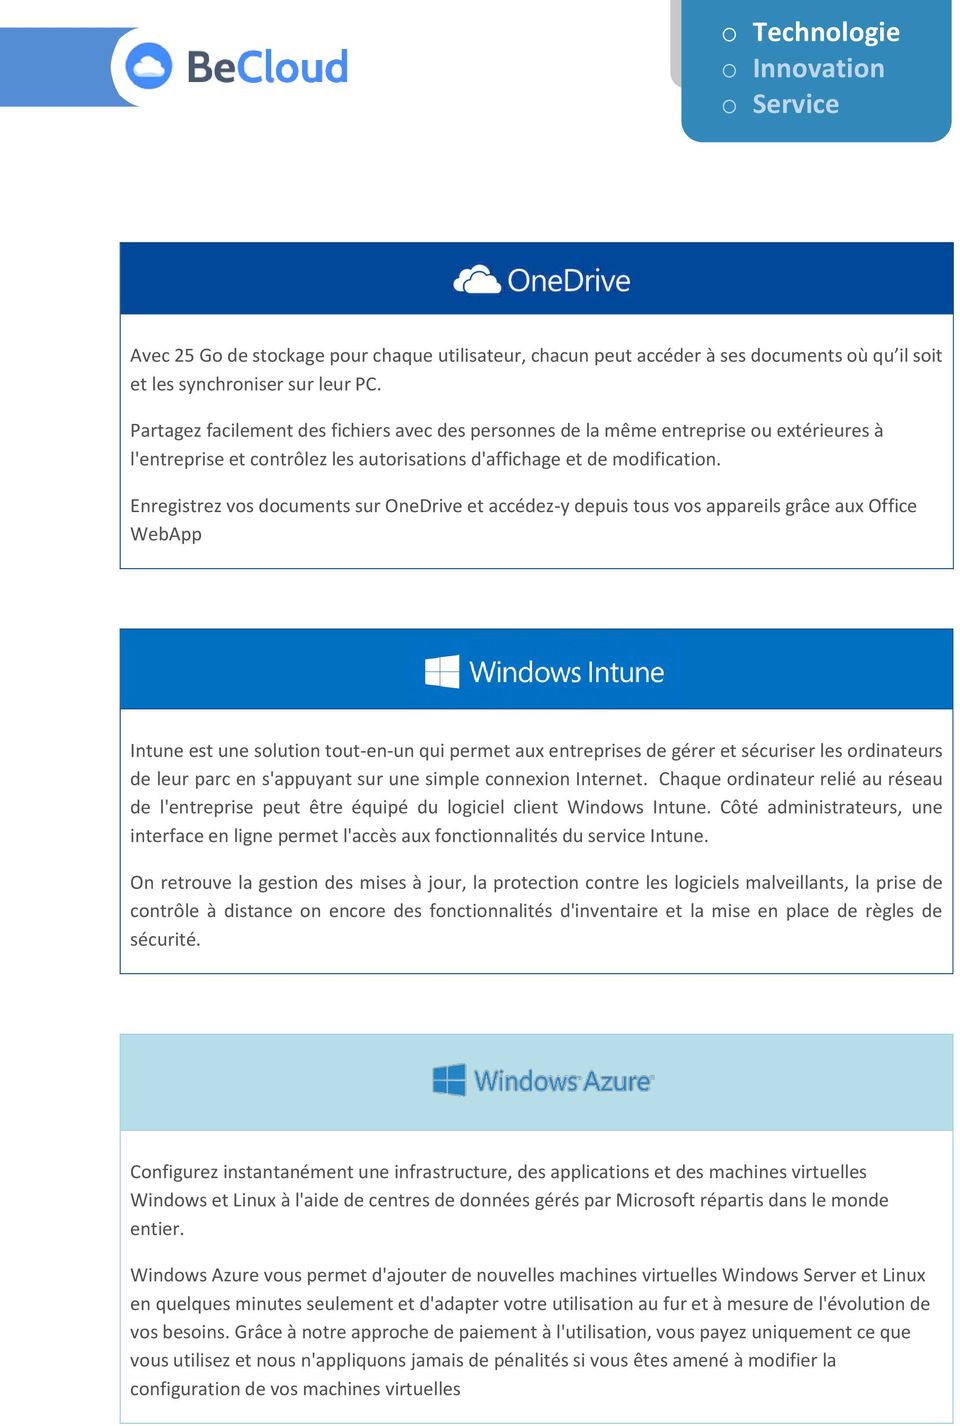 Enregistrez vos documents sur OneDrive et accédez-y depuis tous vos appareils grâce aux Office WebApp Intune est une solution tout-en-un qui permet aux entreprises de gérer et sécuriser les